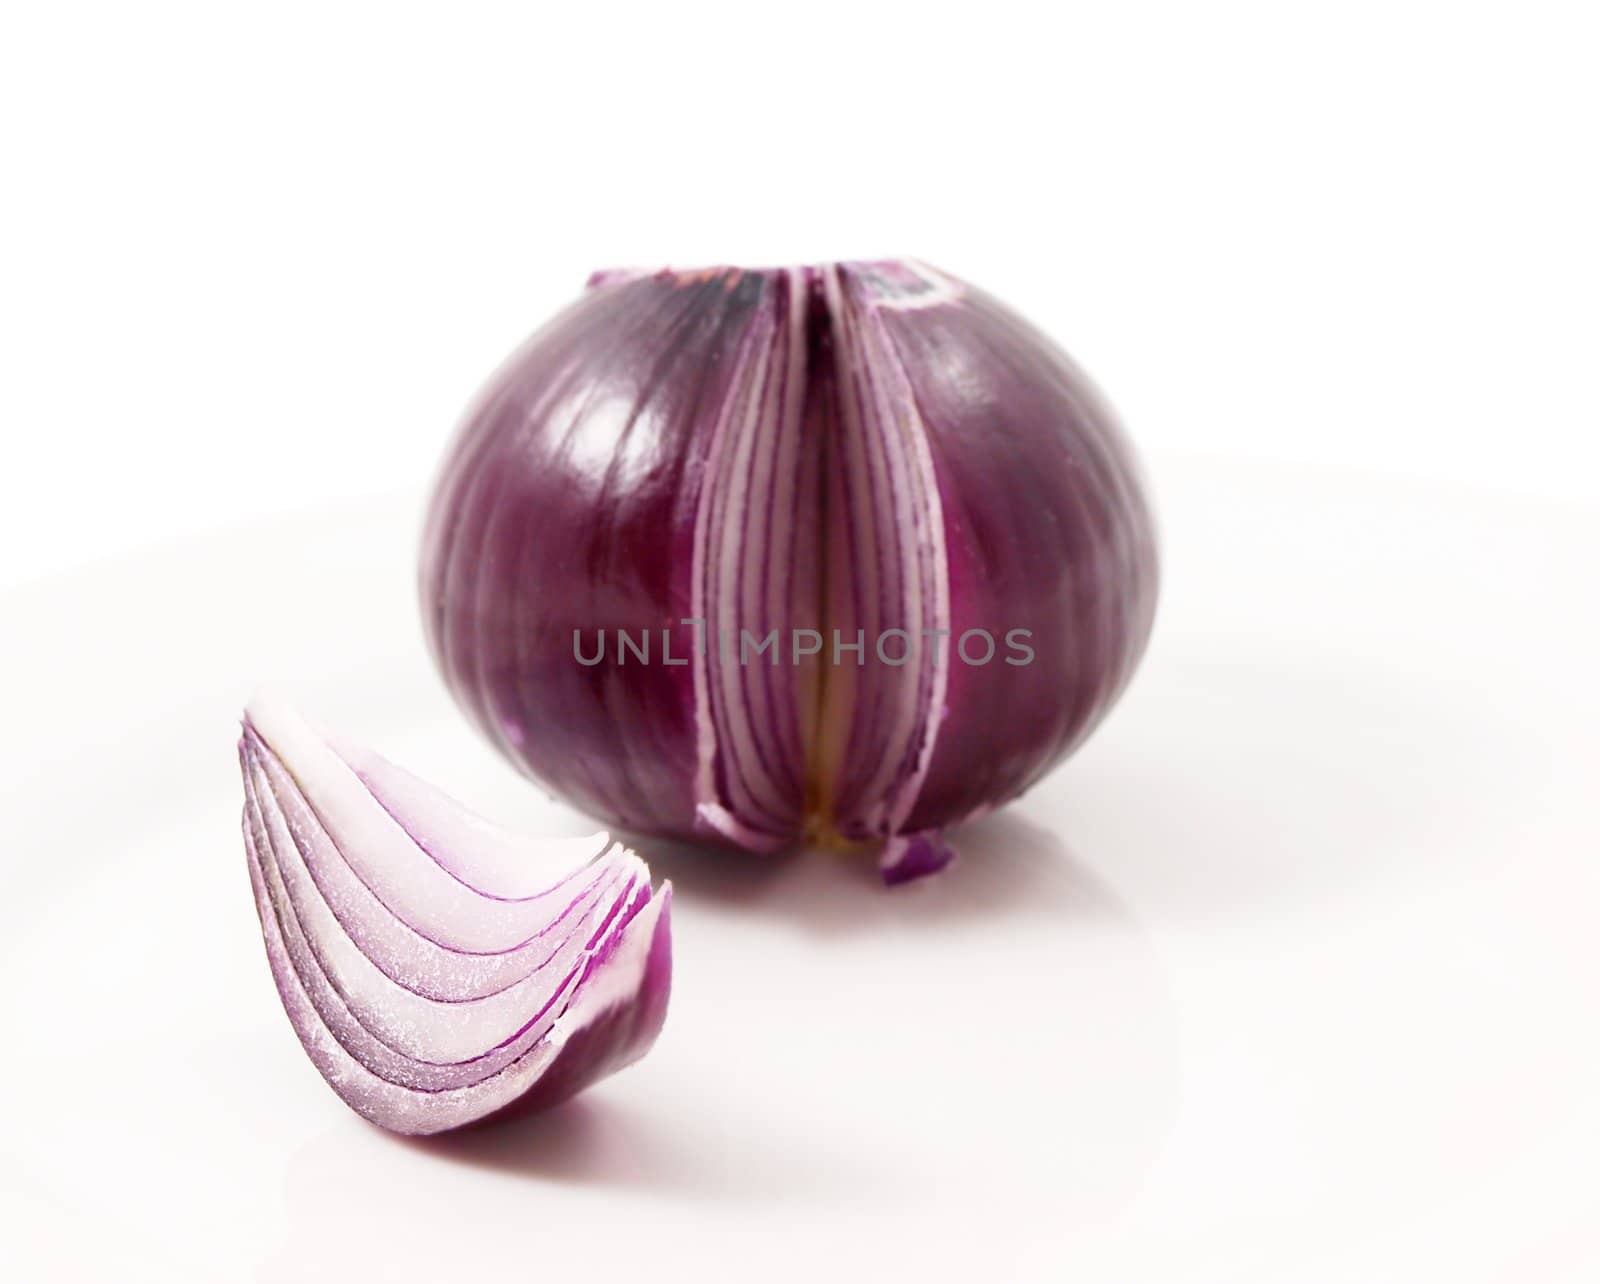 Red onion by Arvebettum